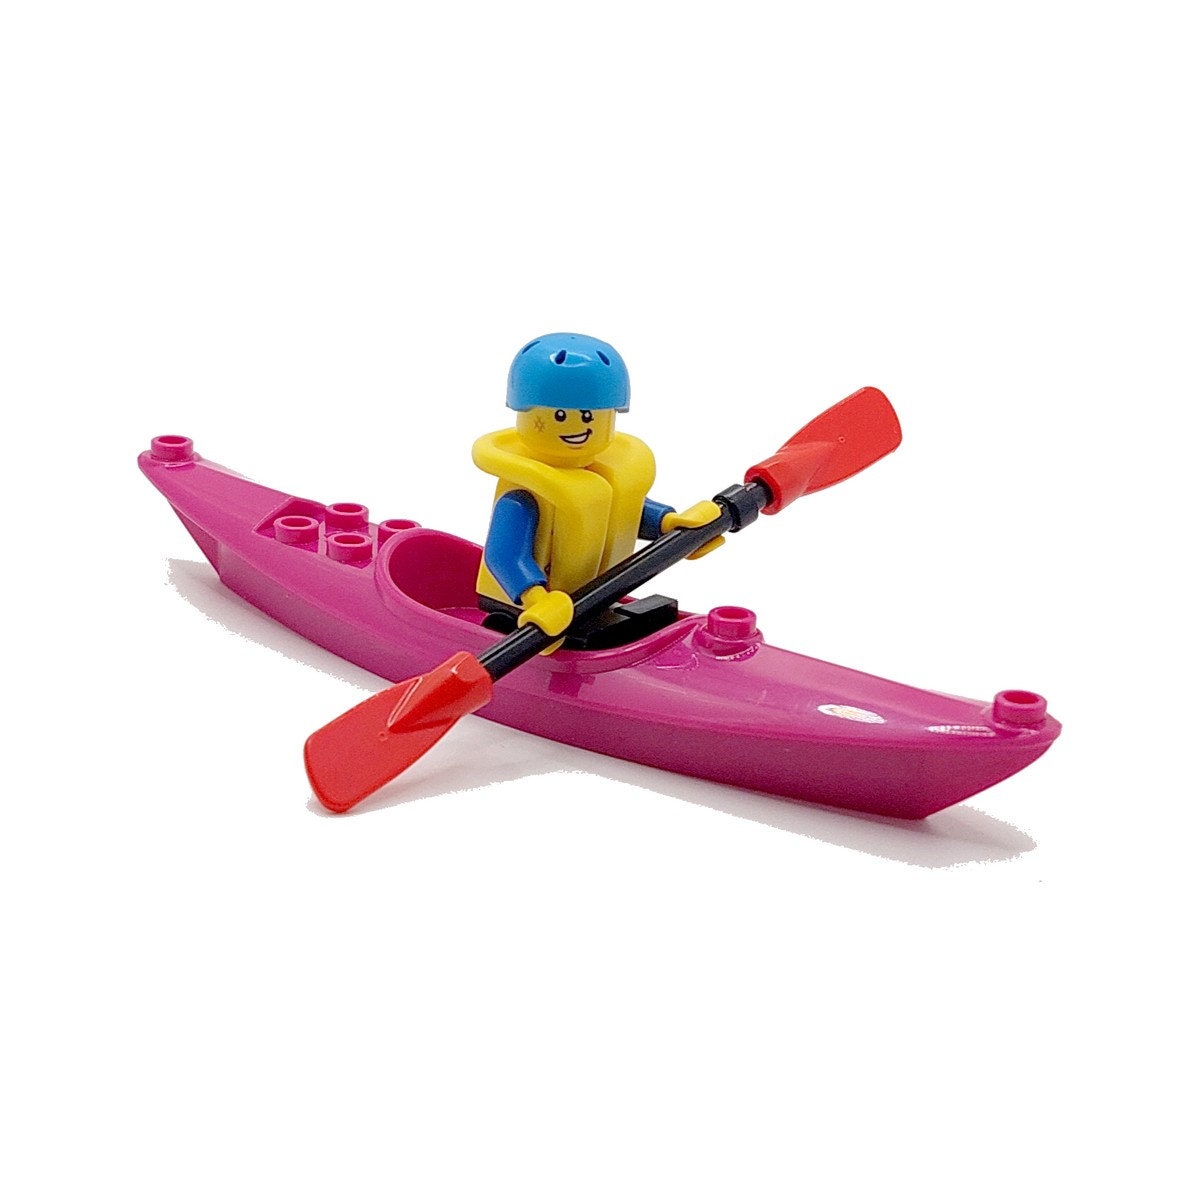 Lego magenta kayak for sale  